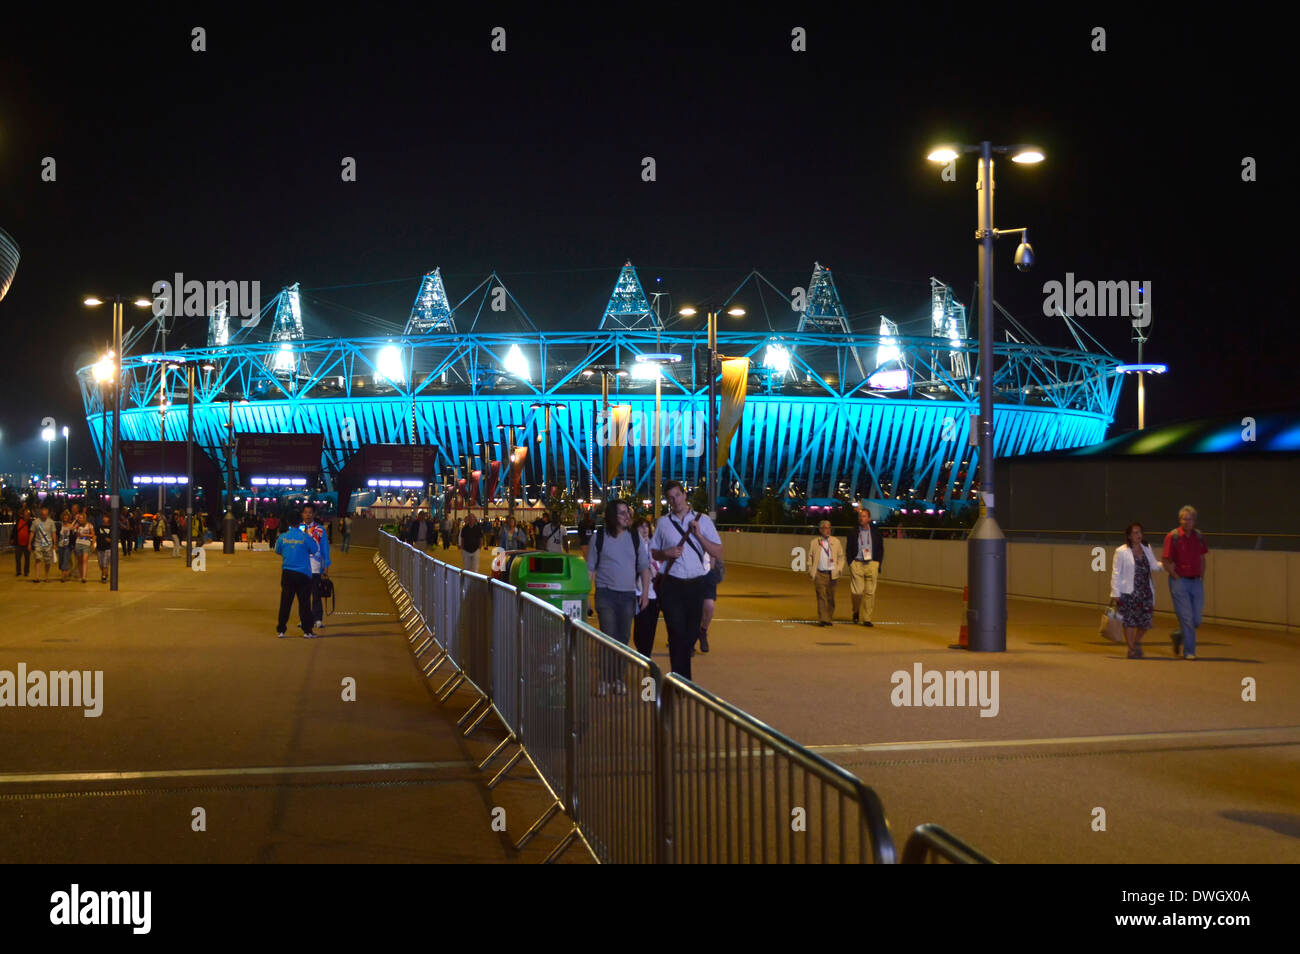 Olympics Zuschauer gehen aus East London 2012 Paralympischen Spiele Flutlicht Nachtveranstaltung Flutlicht Olympiastadion Stratford Newham London England Großbritannien Stockfoto